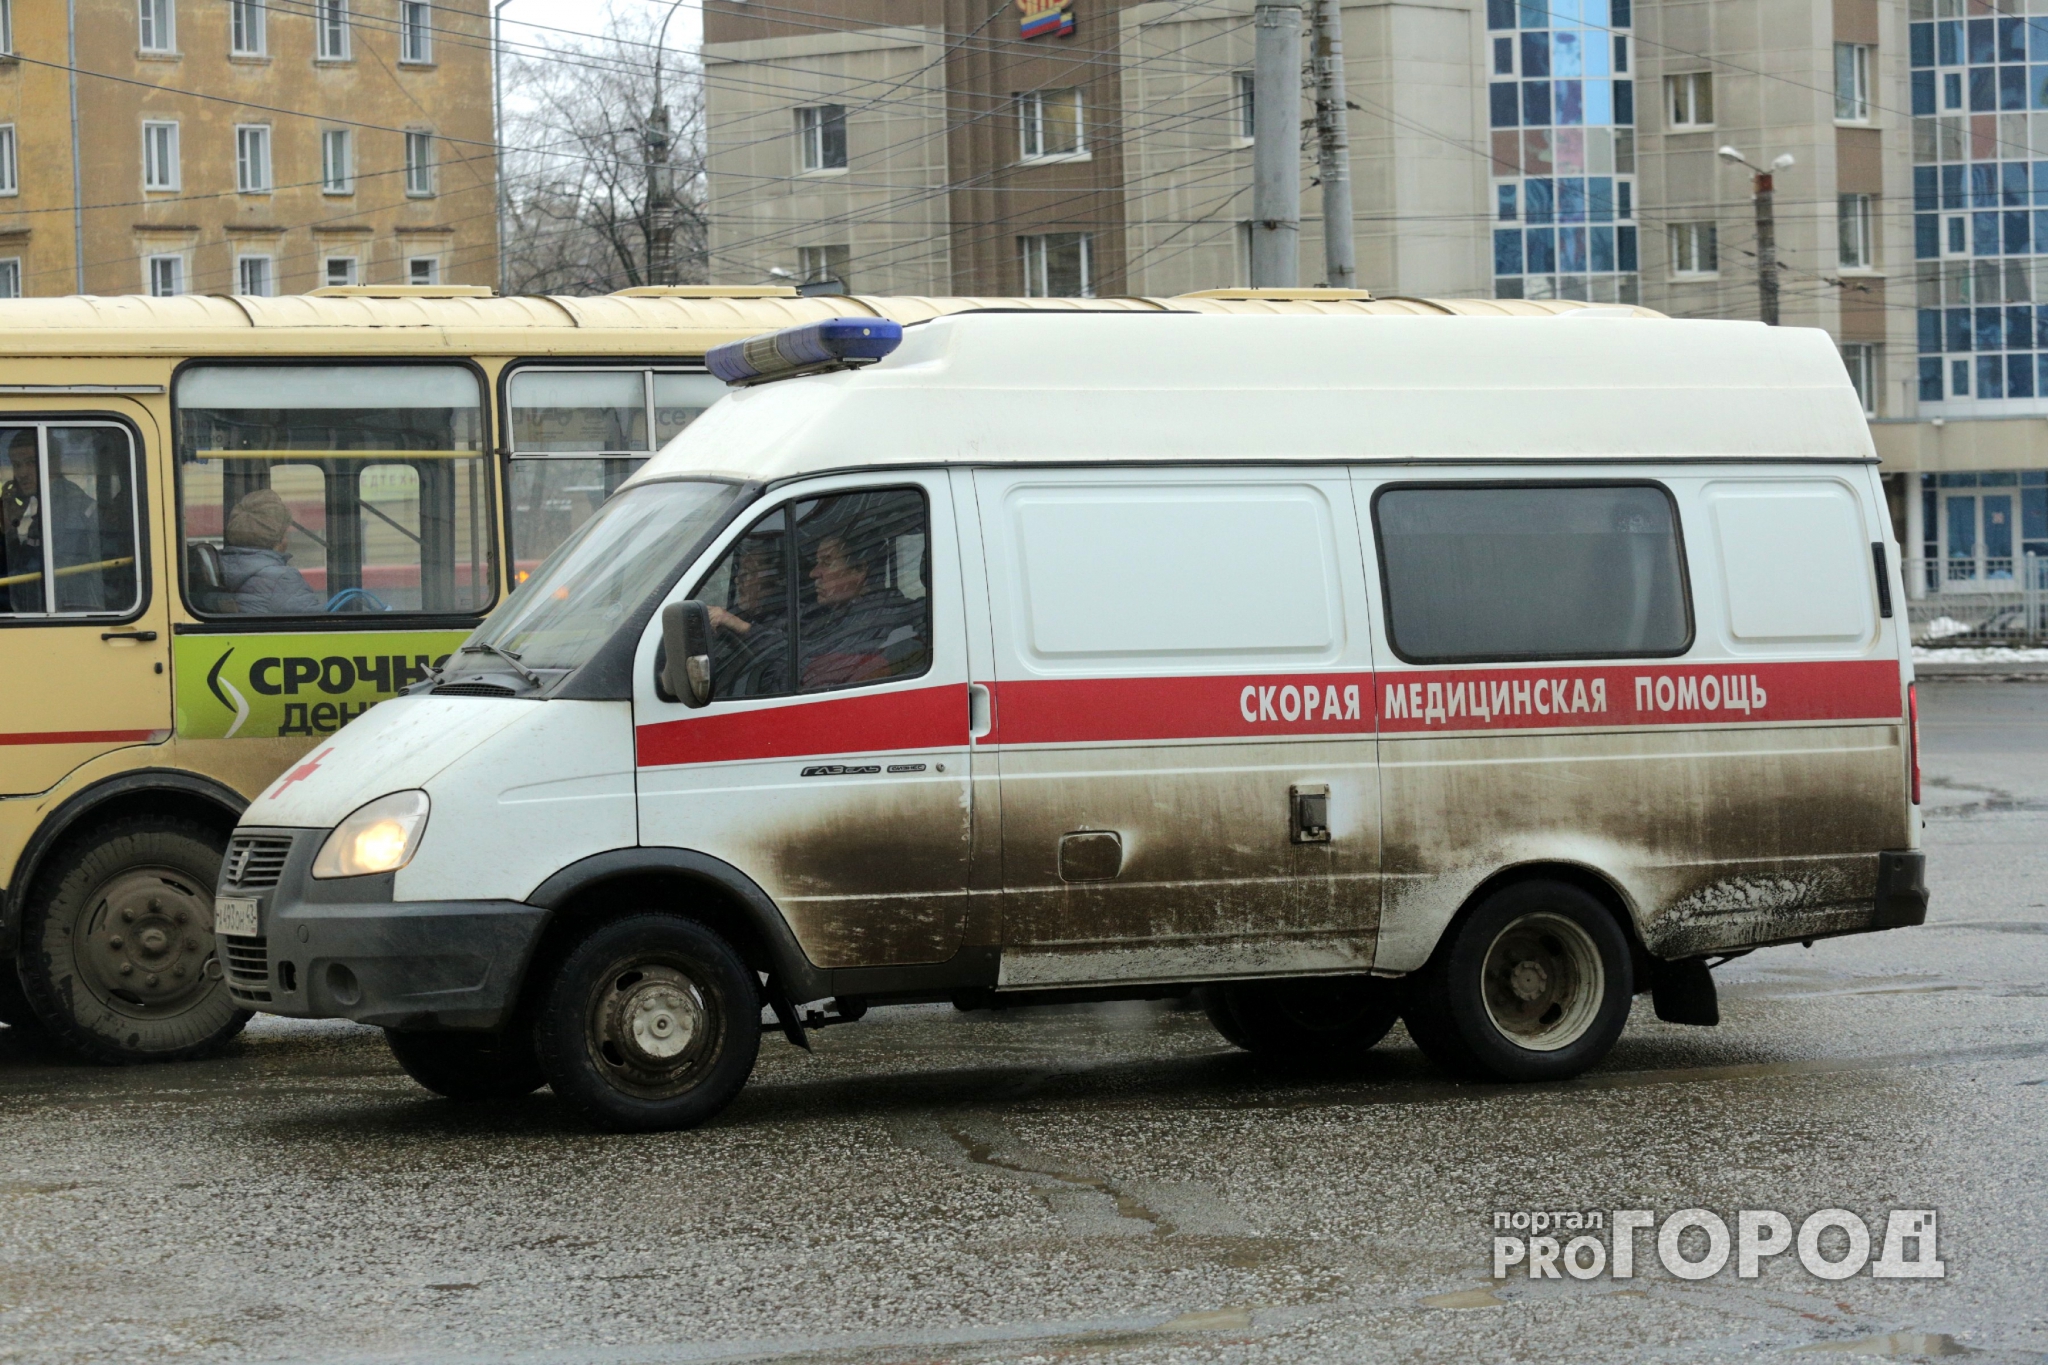 Денег нет, но ты держись: водитель грузовика в Ярославле сбил женщину и уехал